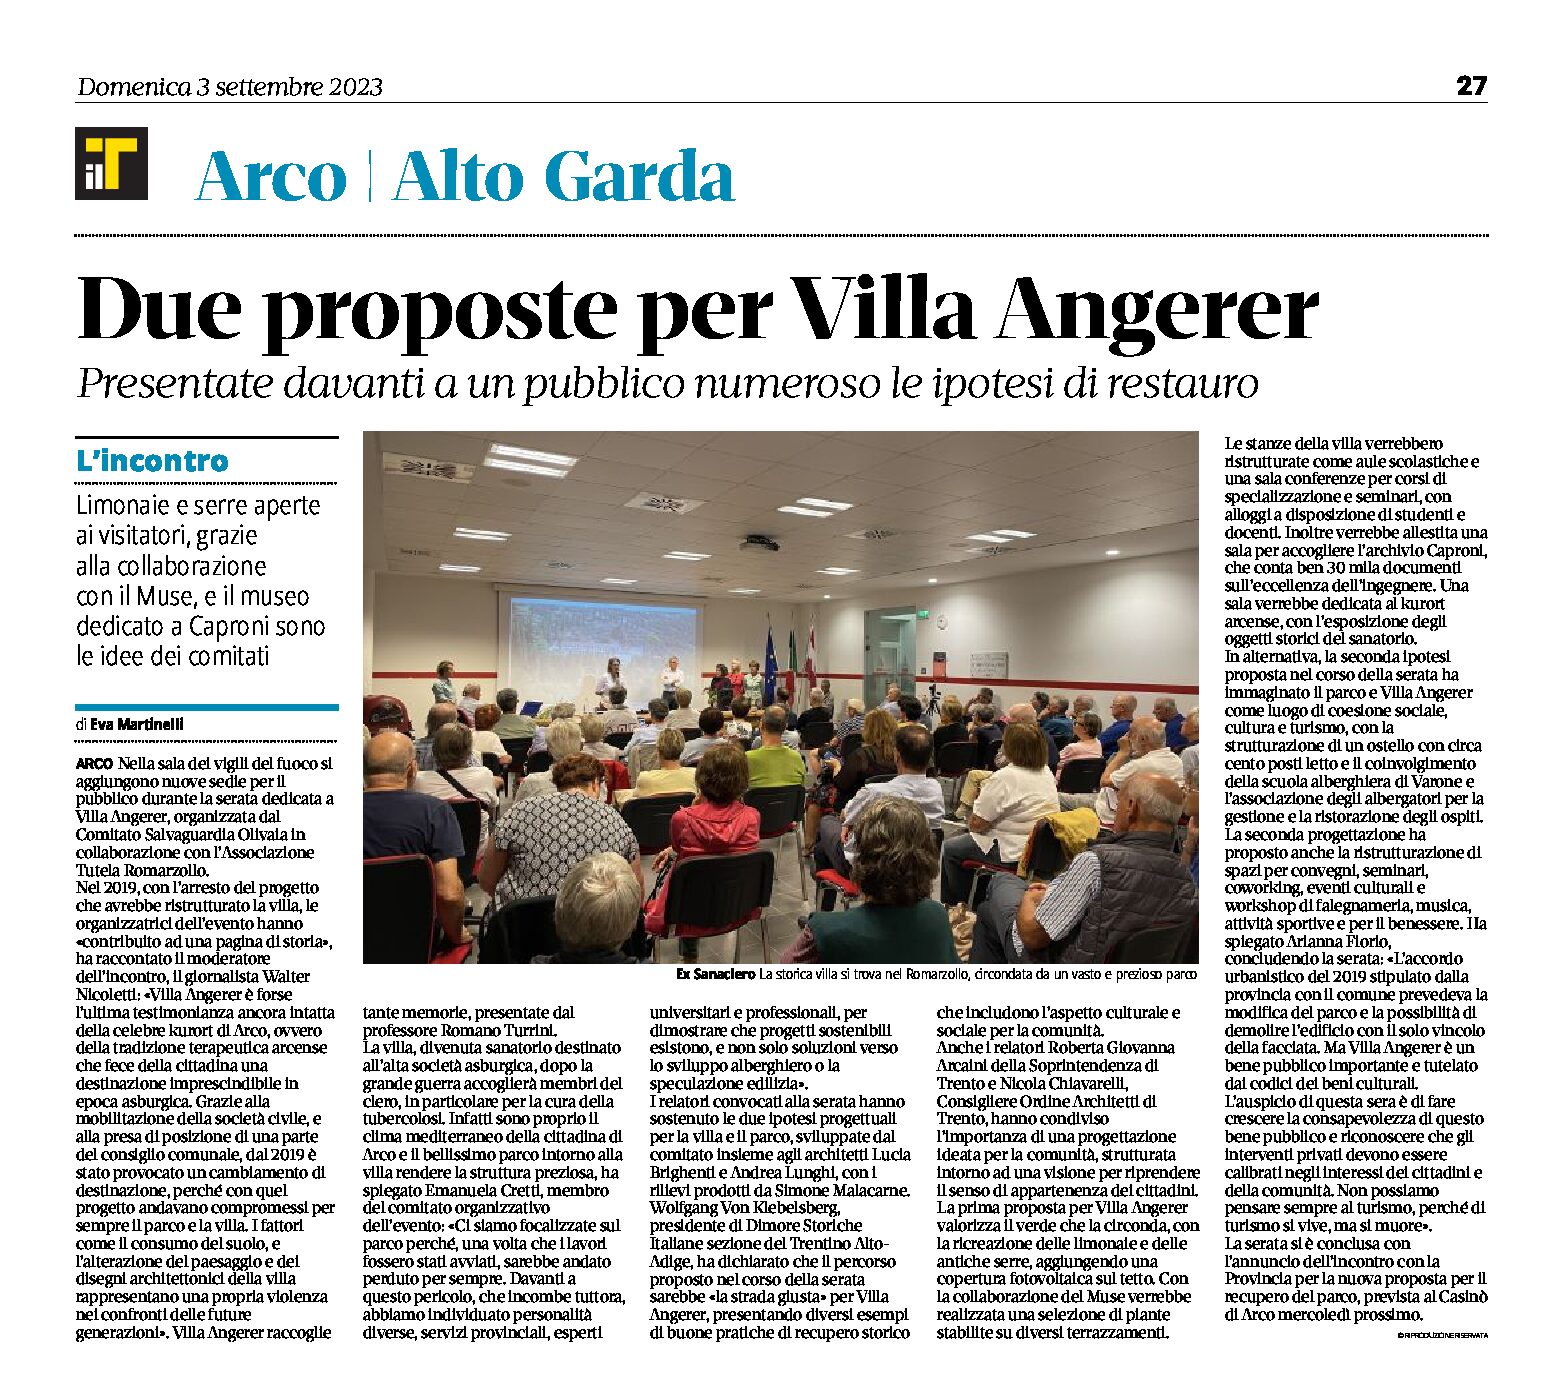 Arco, Romarzollo: Villa Angerer, presentate al pubblico due proposte